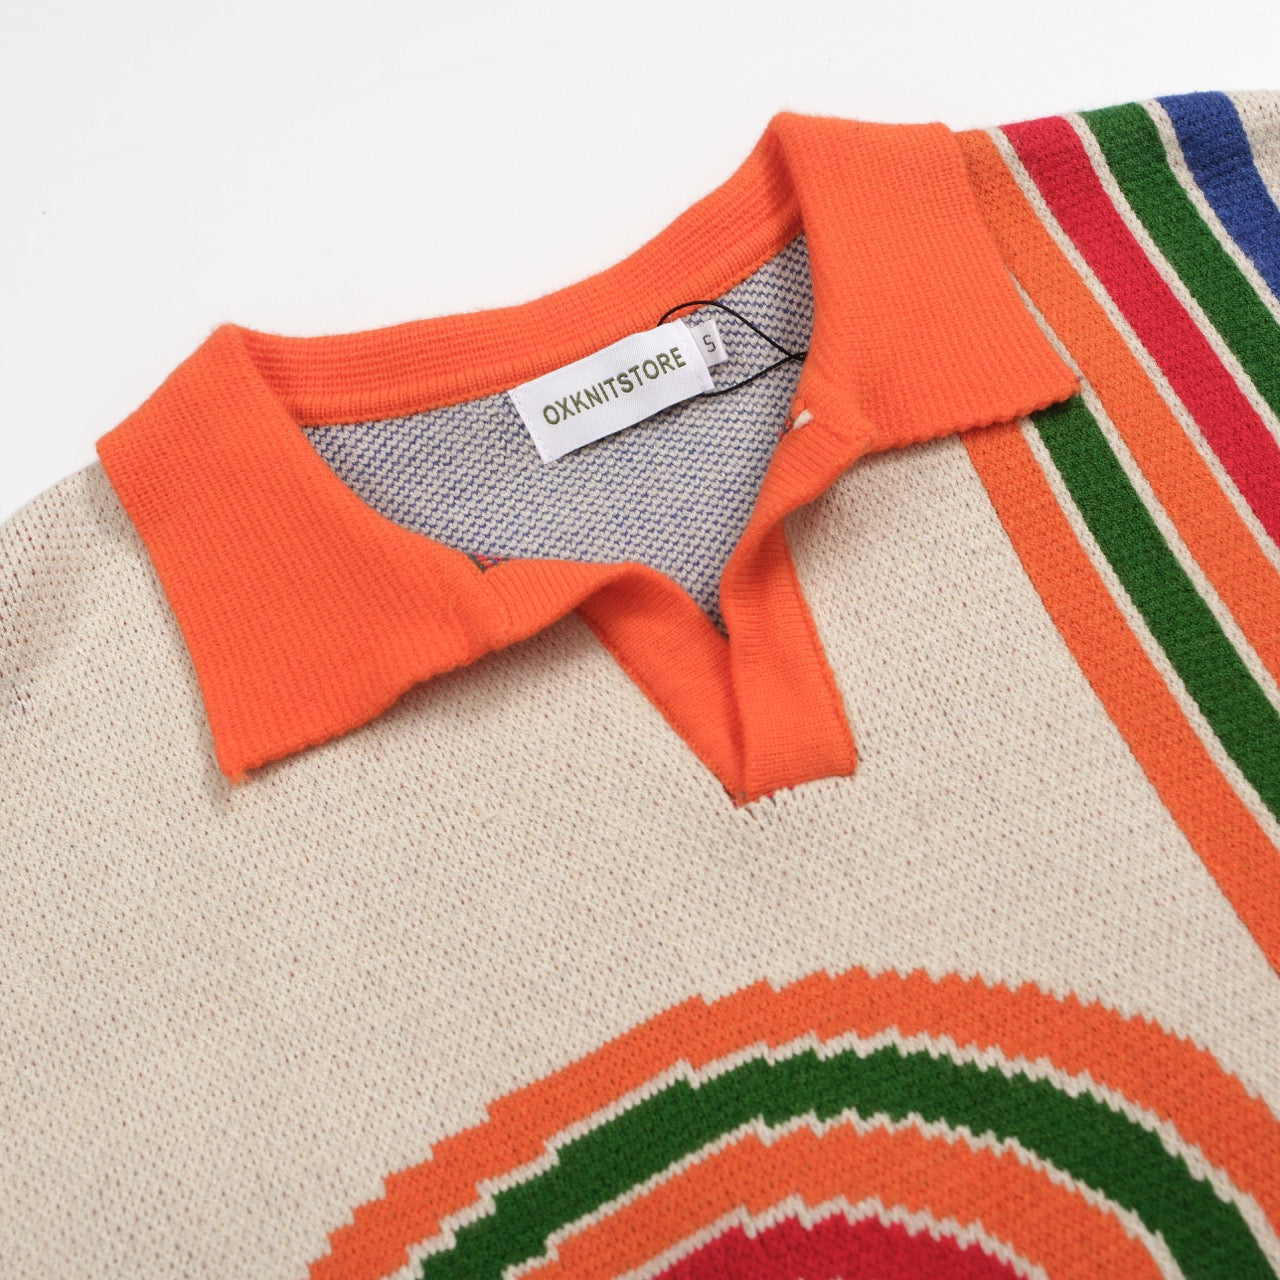 Men's art graphic V-neck knitted polo shirt